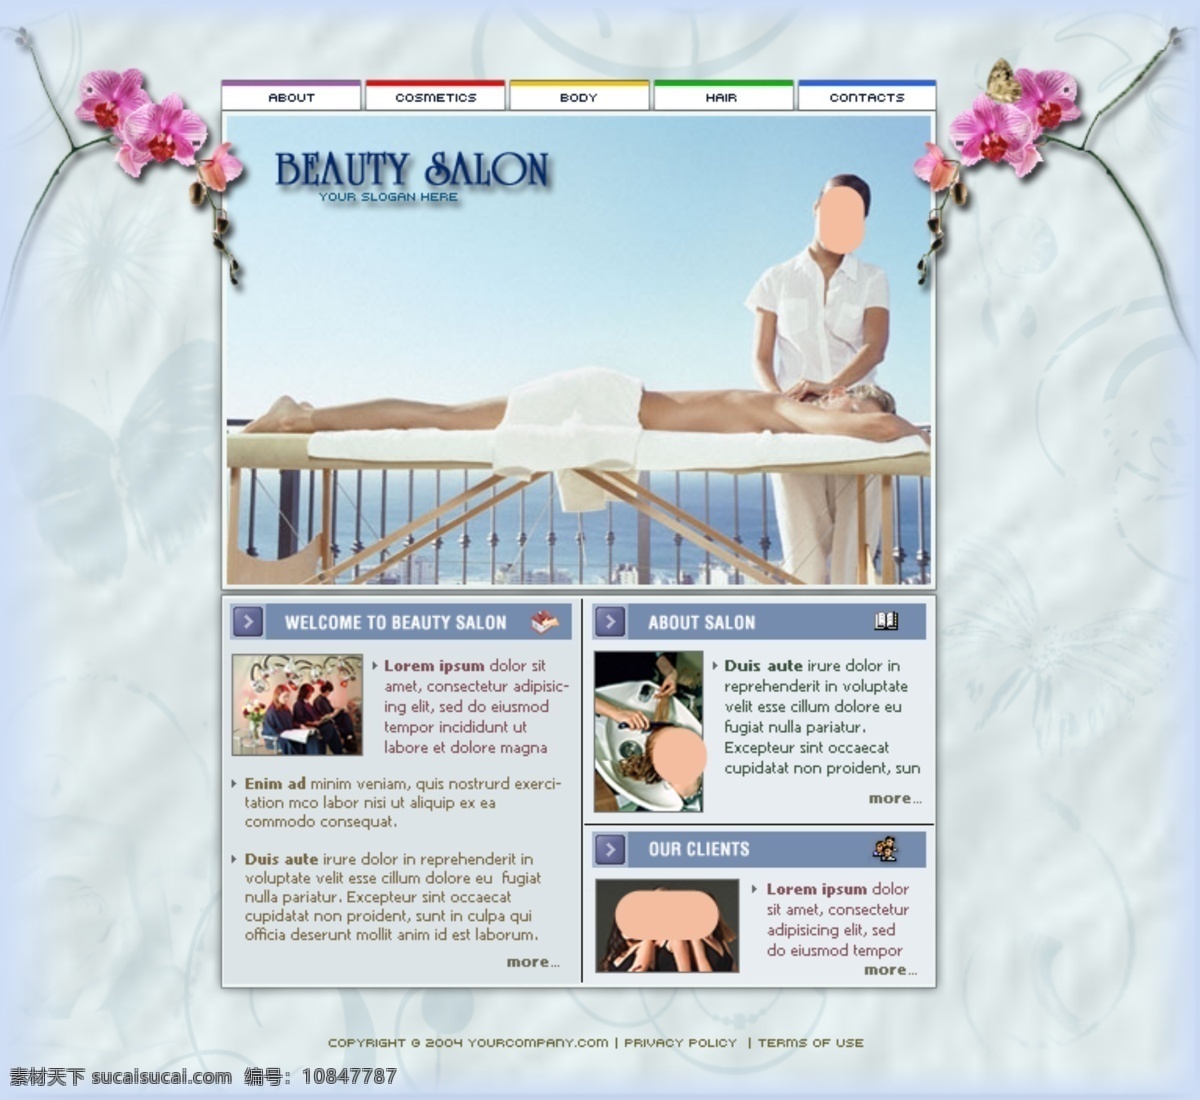 美体 美容服务 女性 行业 网站 模板 设 国外网站 设计素材 设计网站模板 网页模板 英文模板 公司类模板 web 界面设计 网页素材 其他网页素材